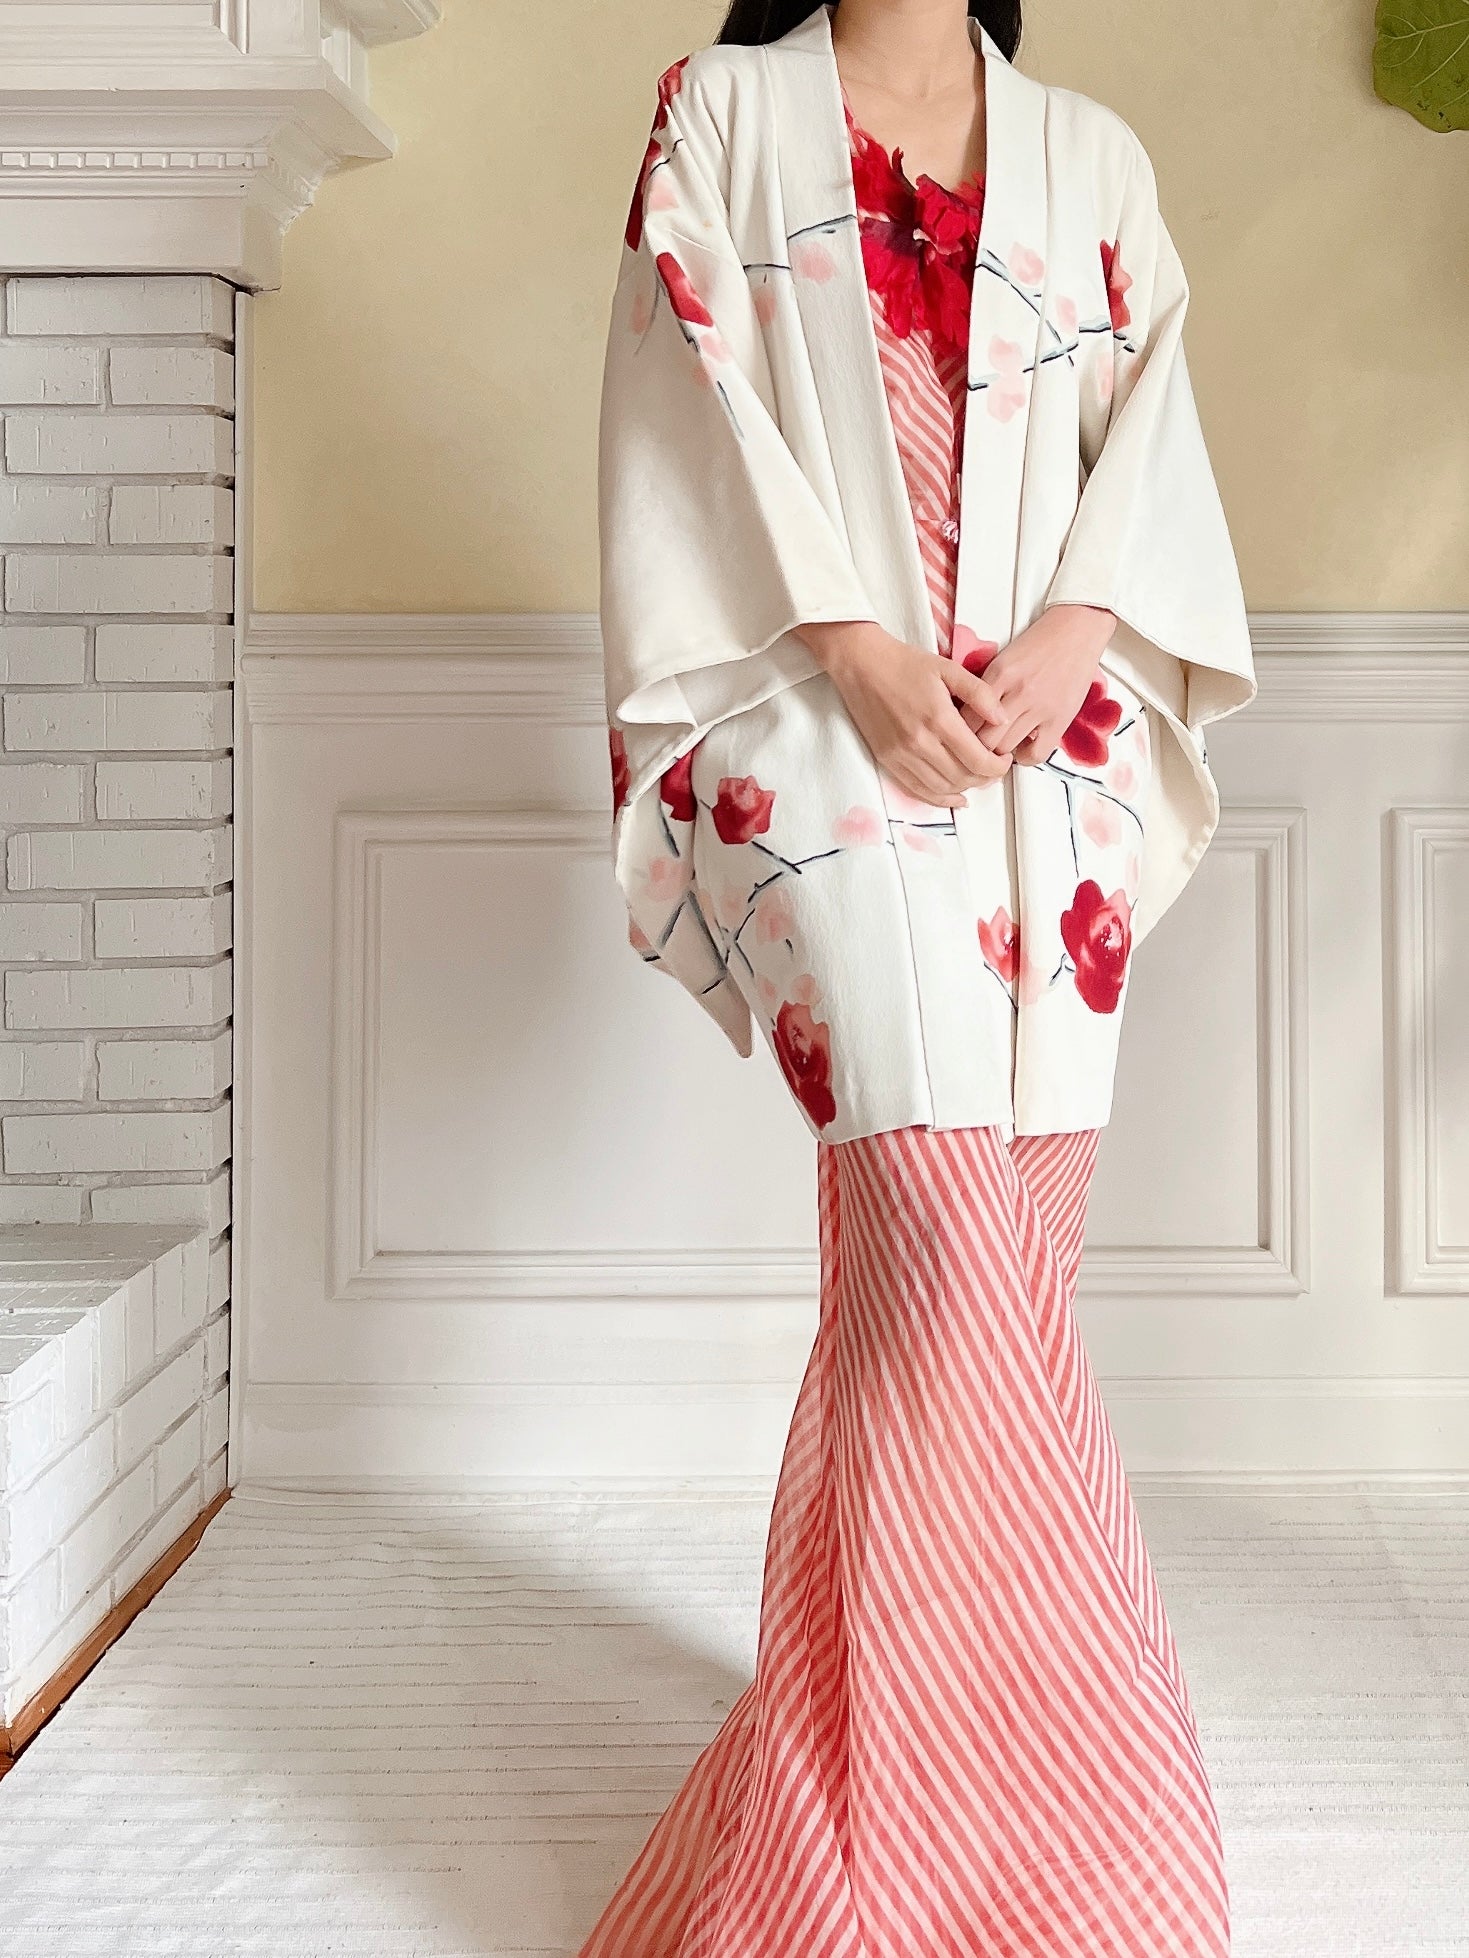 Vintage Ivory Silk Kimono Jacket - OSFM